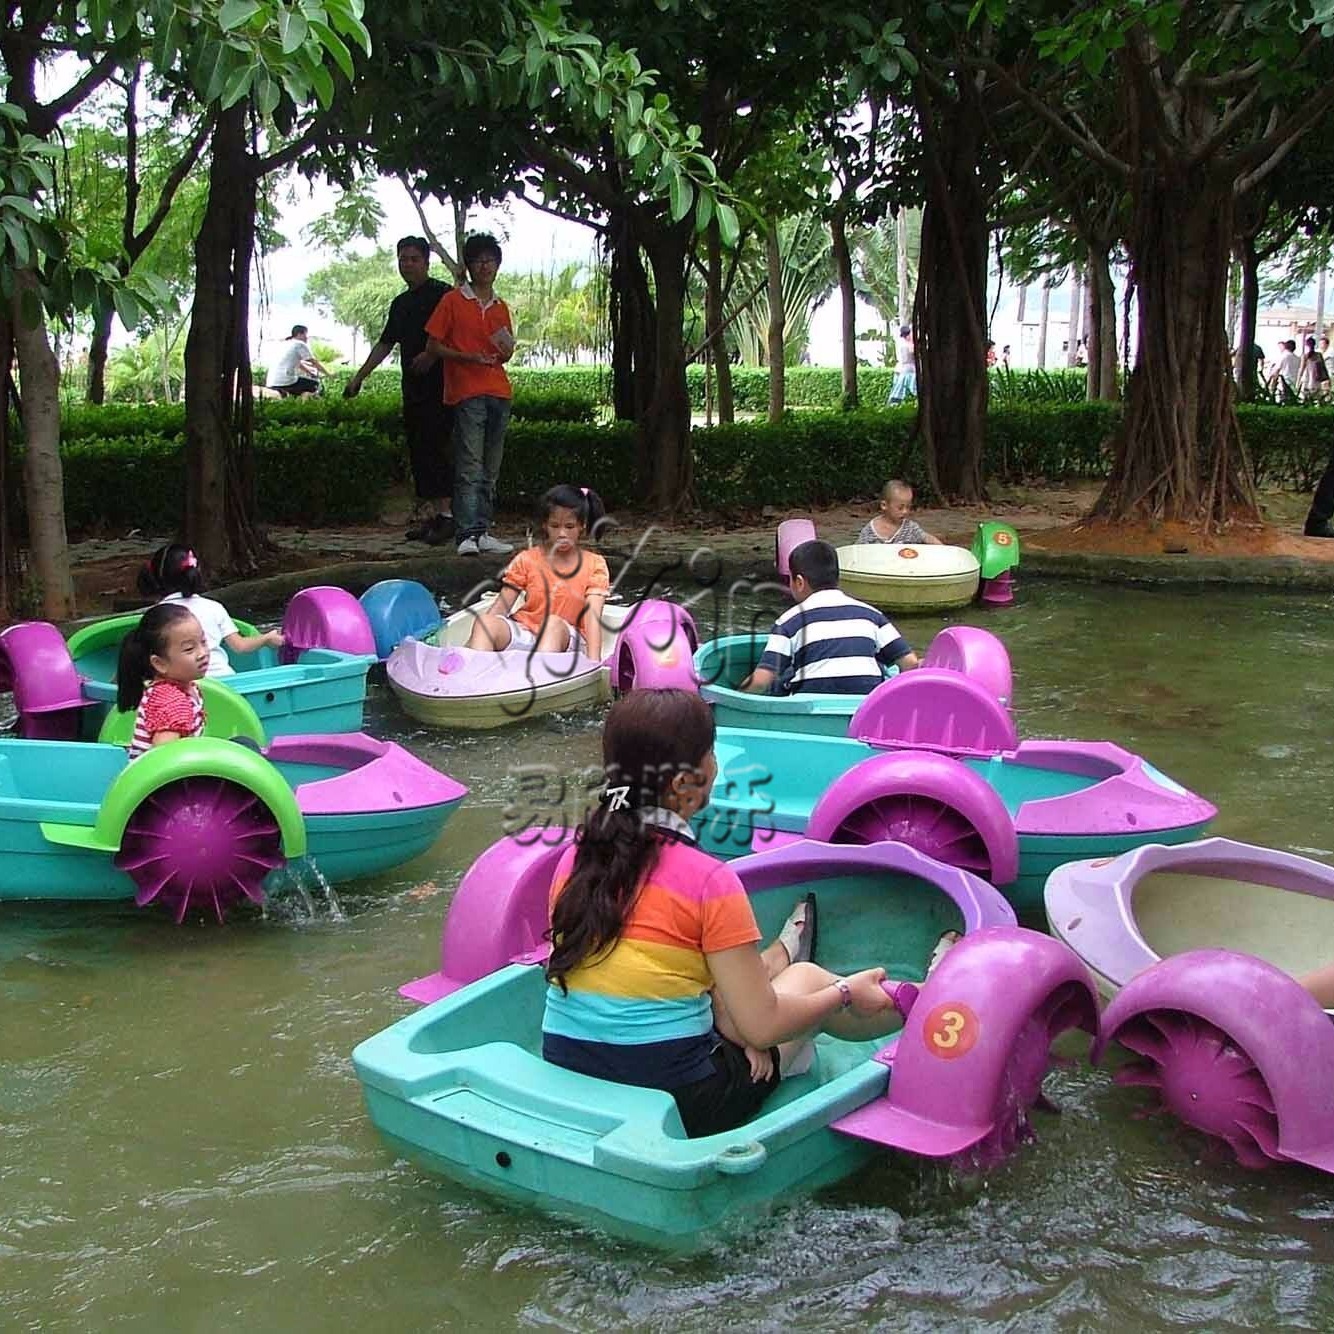 大型充气水池 其他类玩具 亲子互动水上游艺设备 夏季水上手摇船8